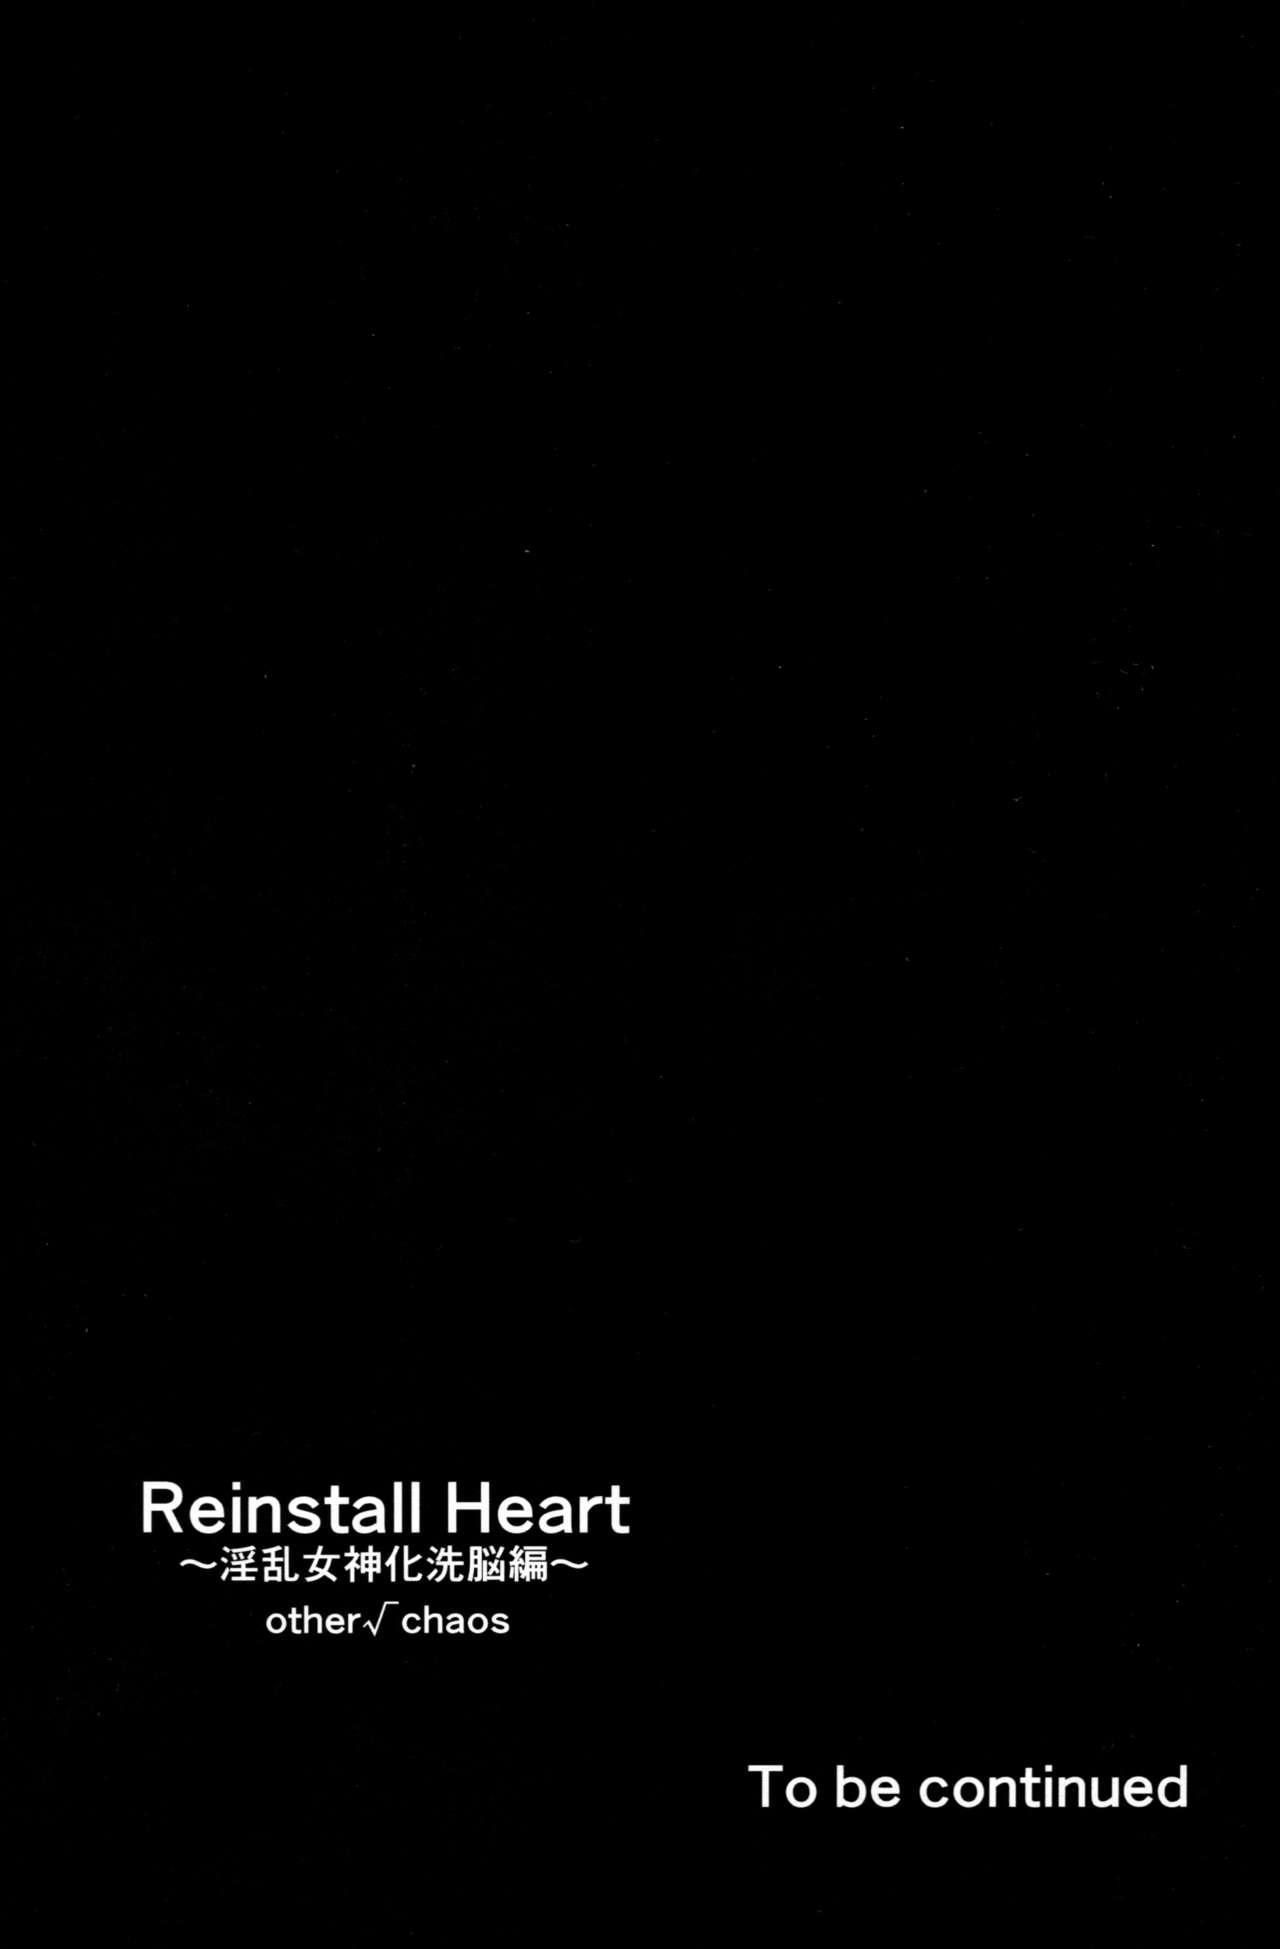 Reinstall Heart Another√chaos 30